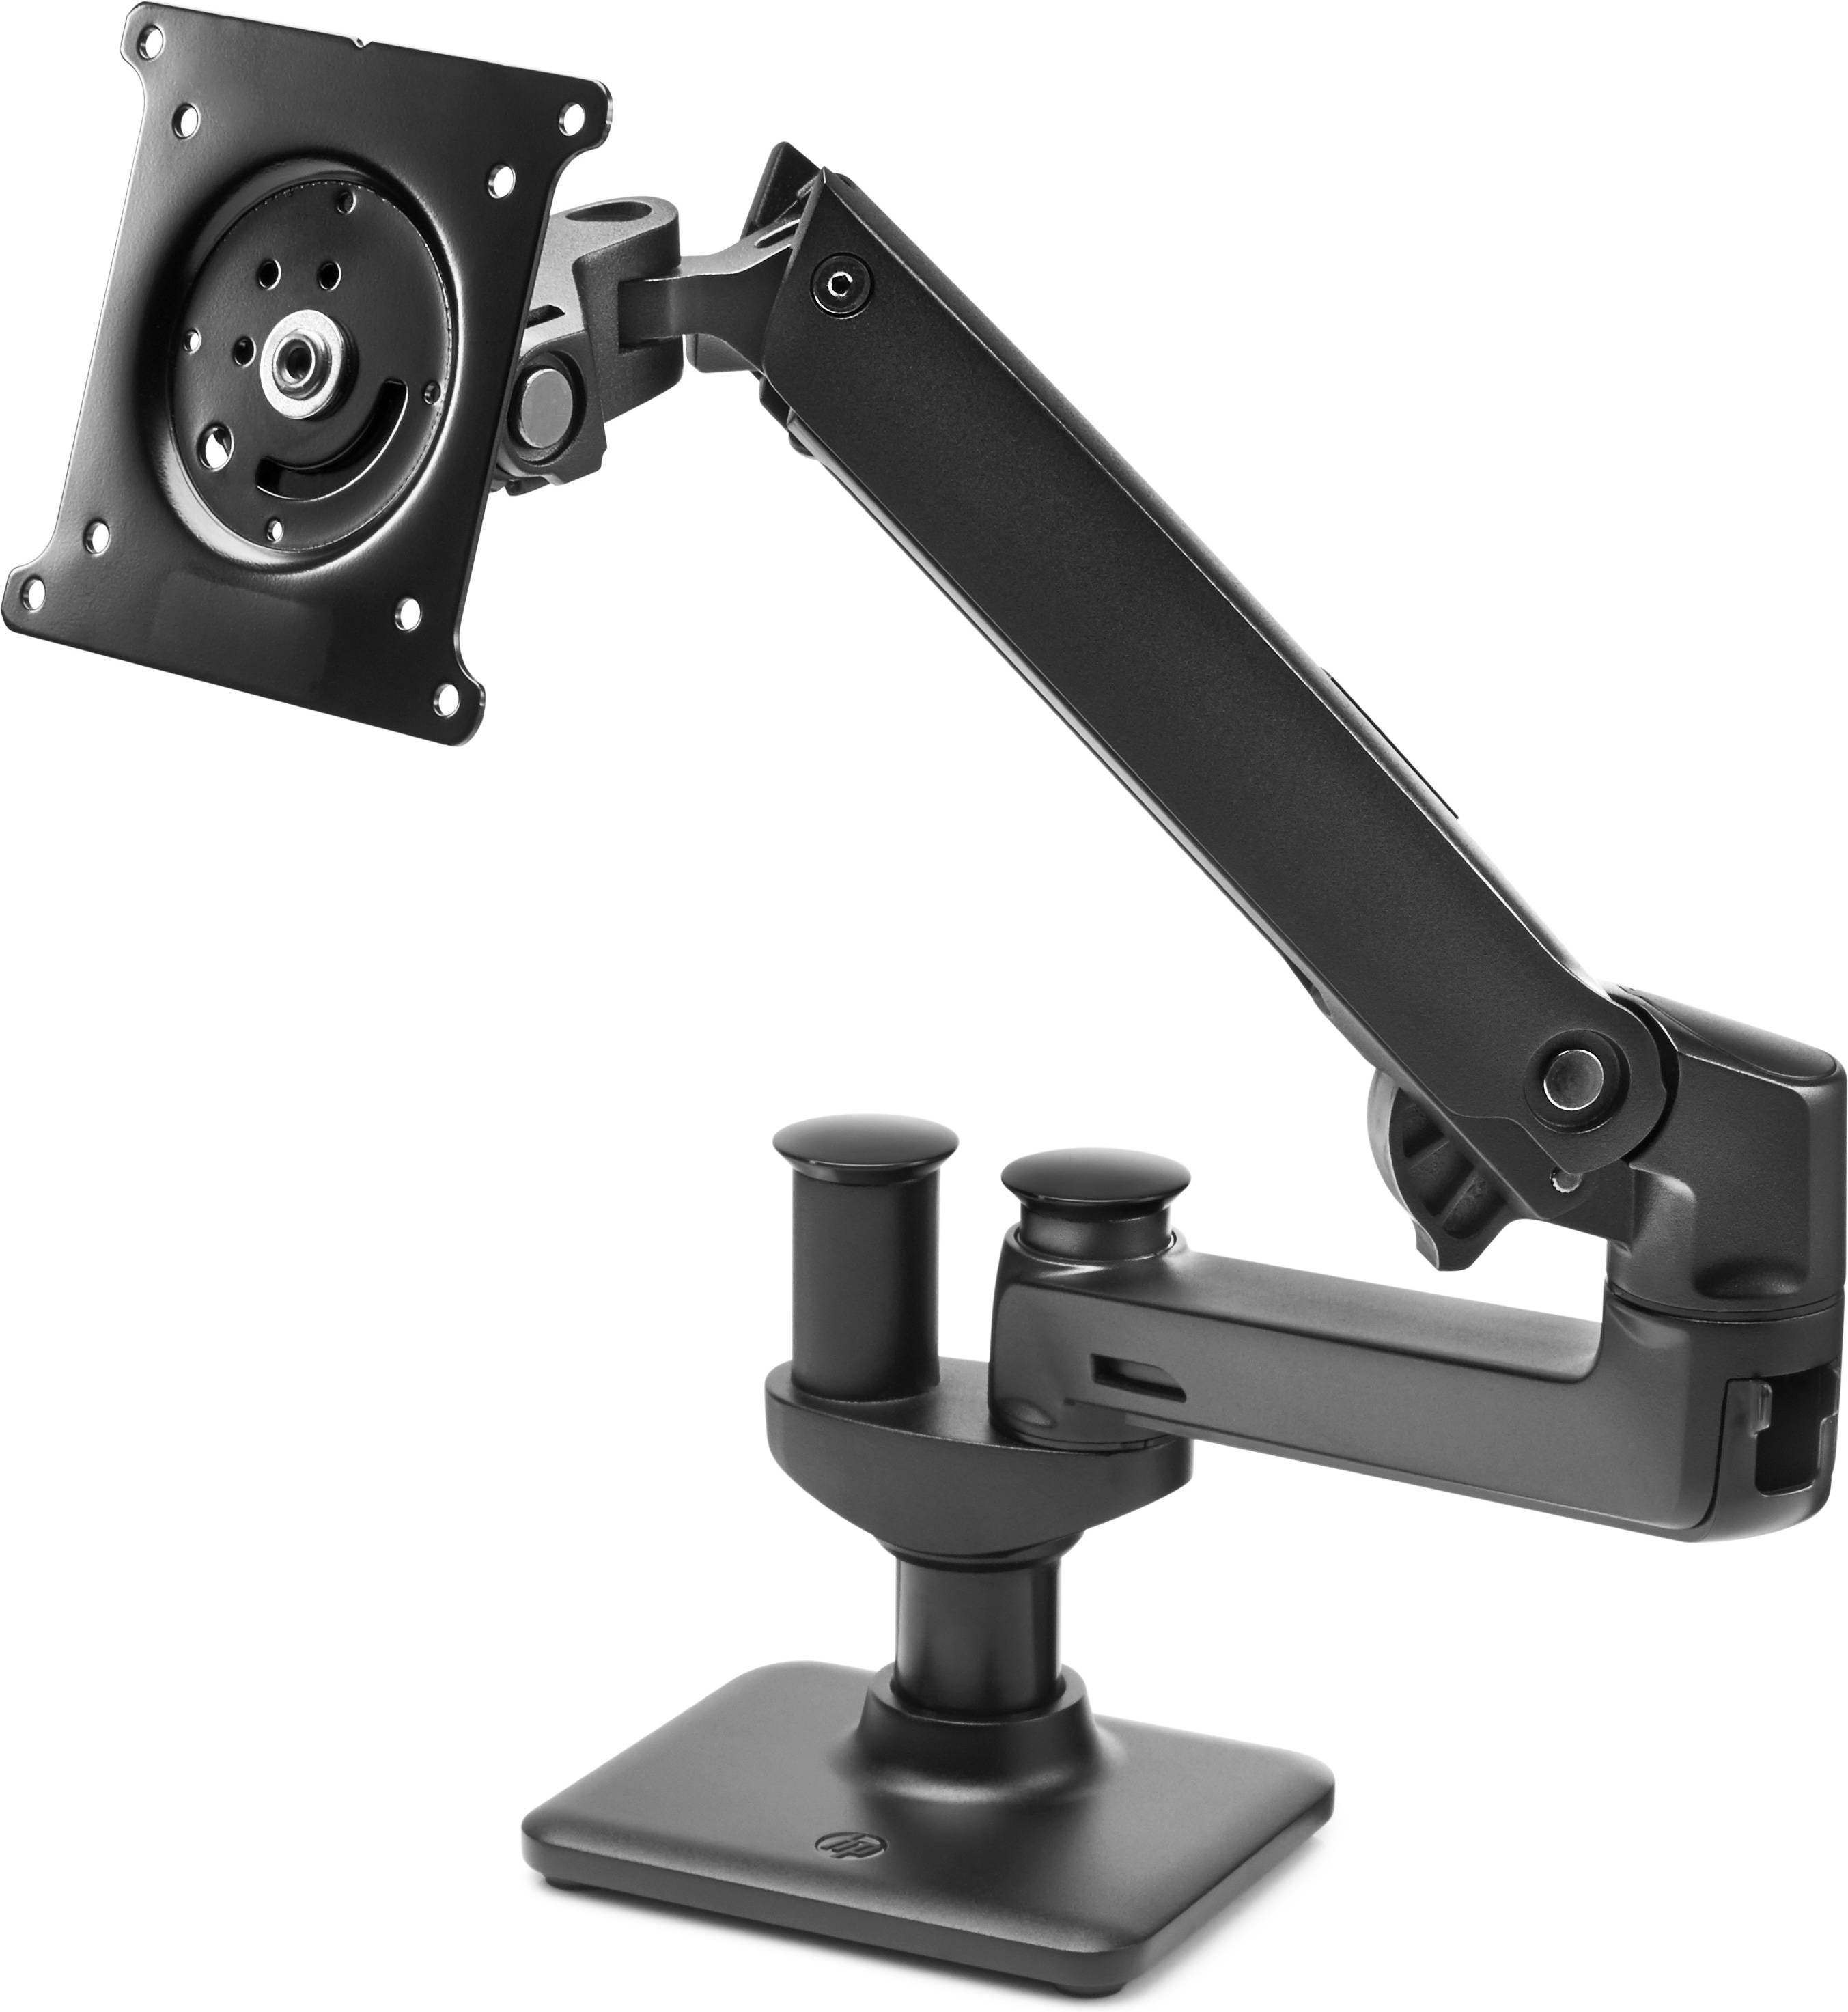 Rca Informatique - image du produit : HOT DESK STAND MONITOR ARM .